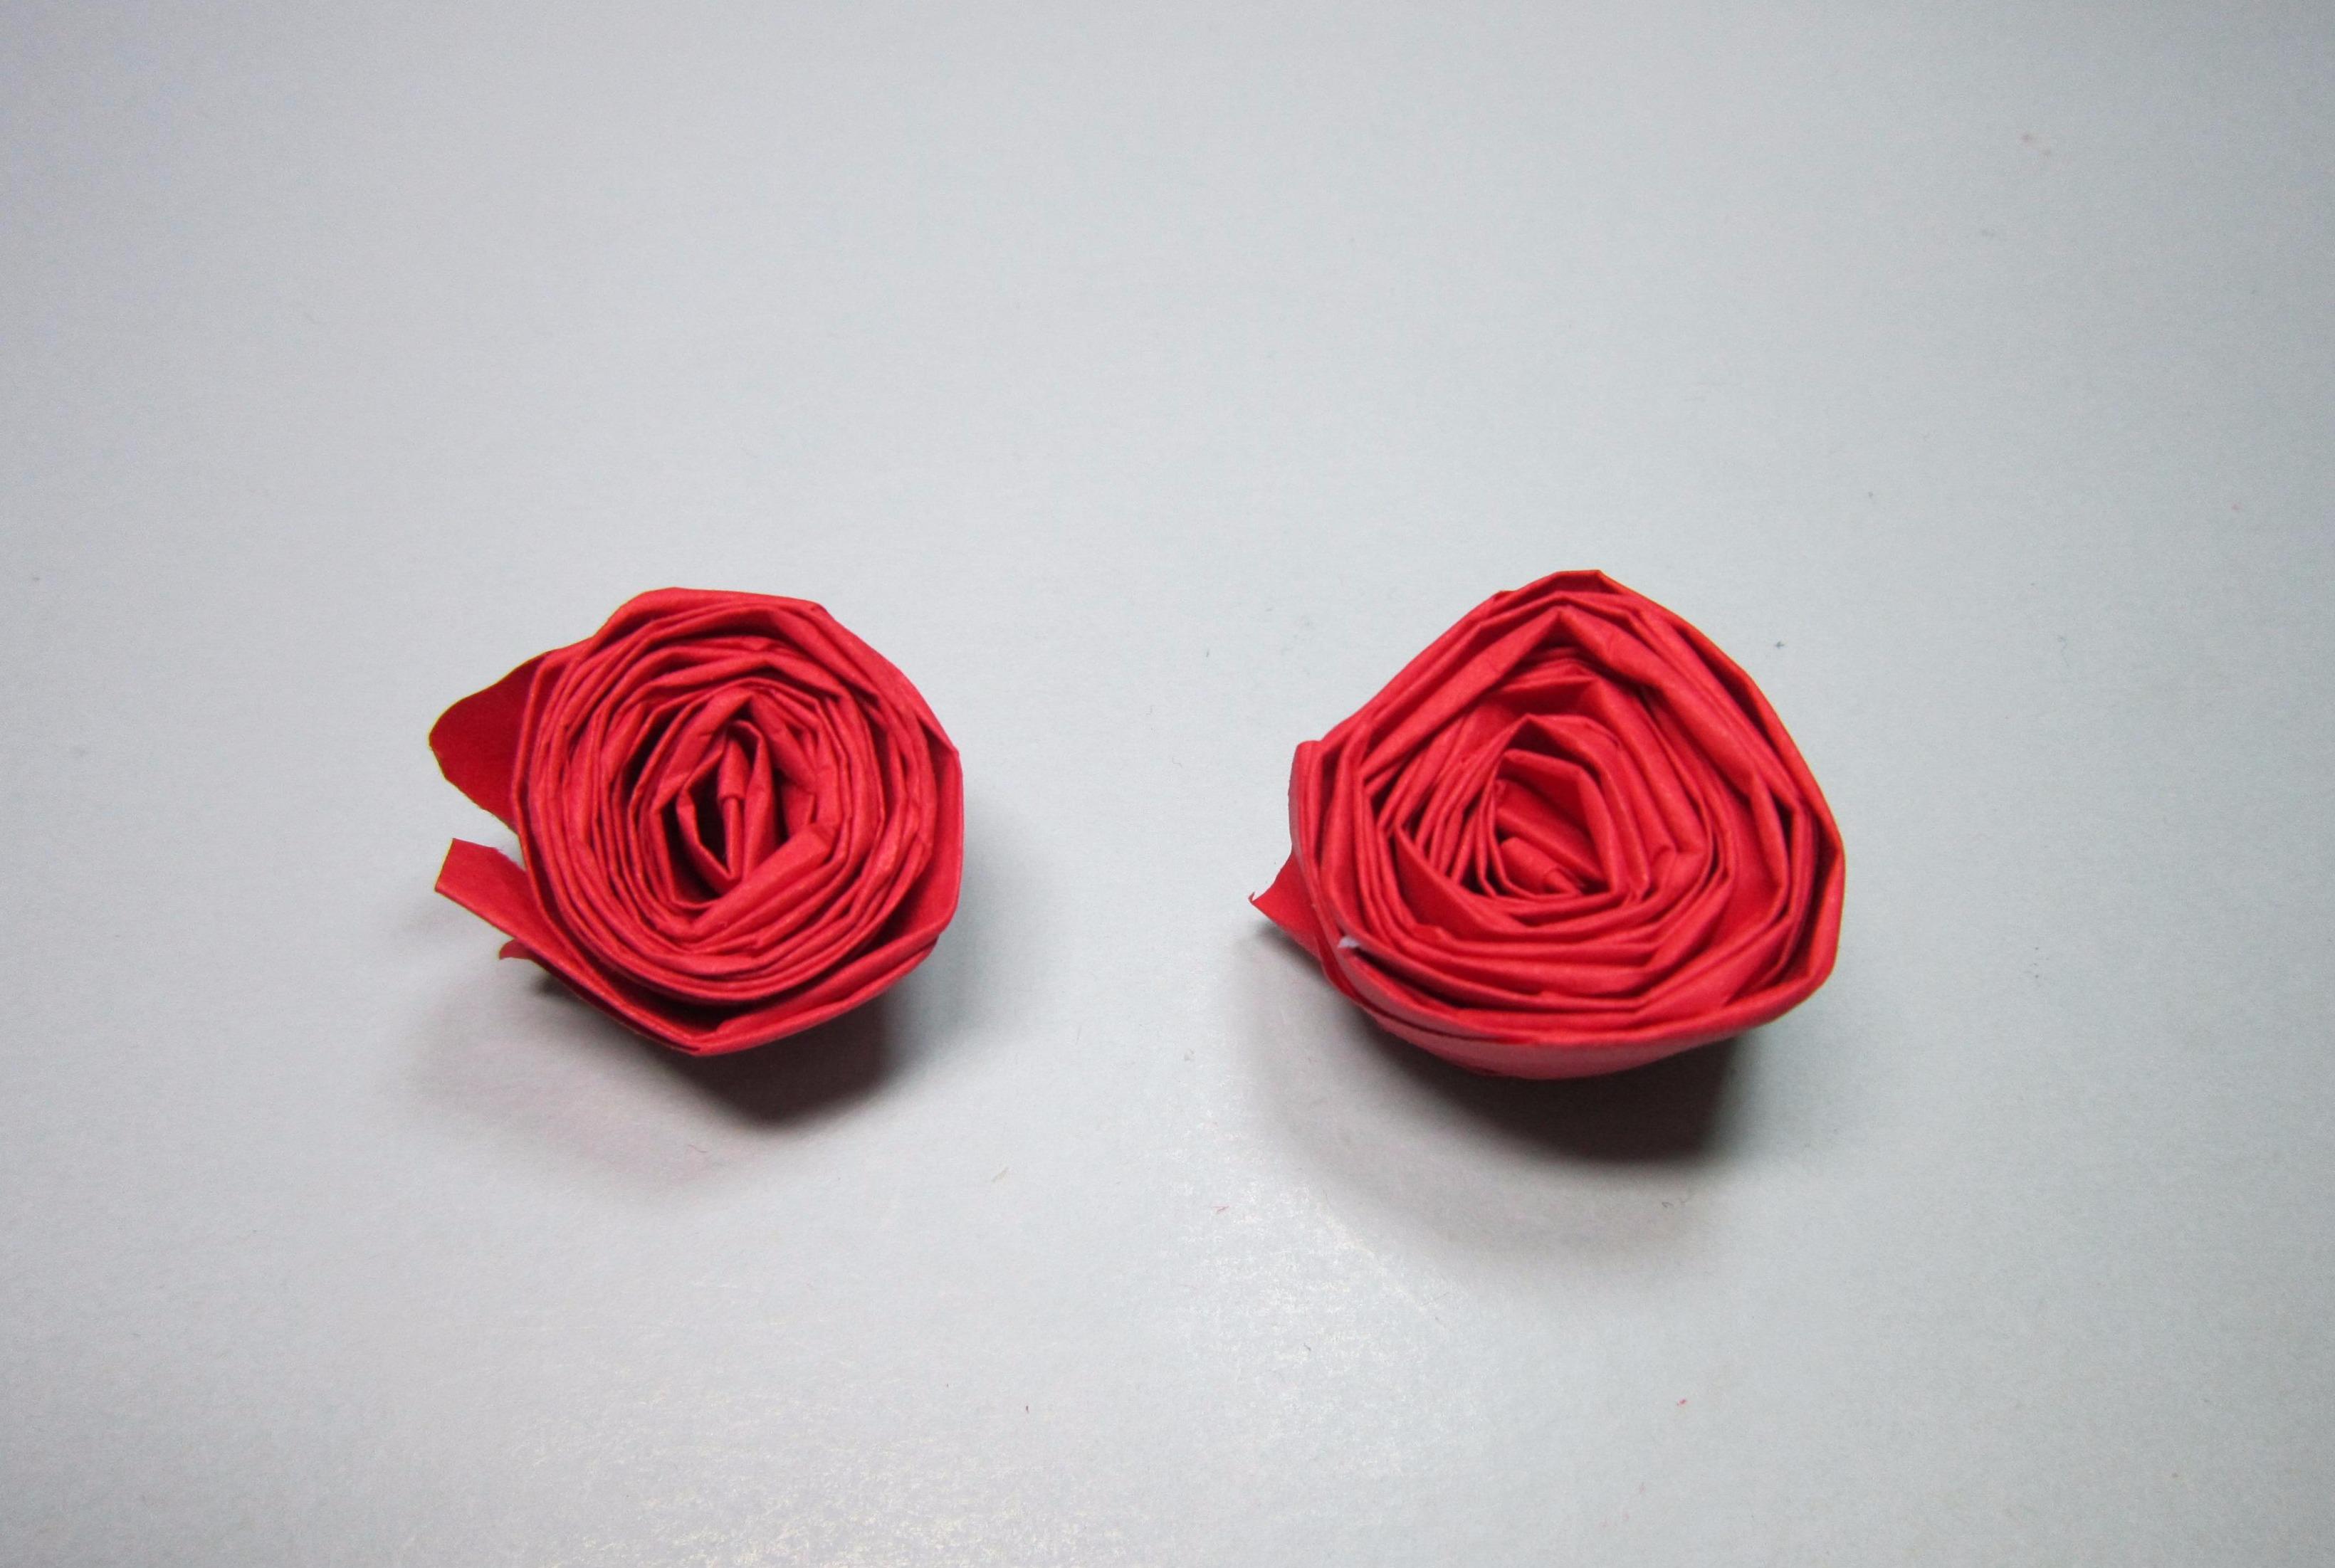 视频:儿童手工折纸玫瑰花,简单的将纸条卷起来就是一朵美丽的玫瑰花了